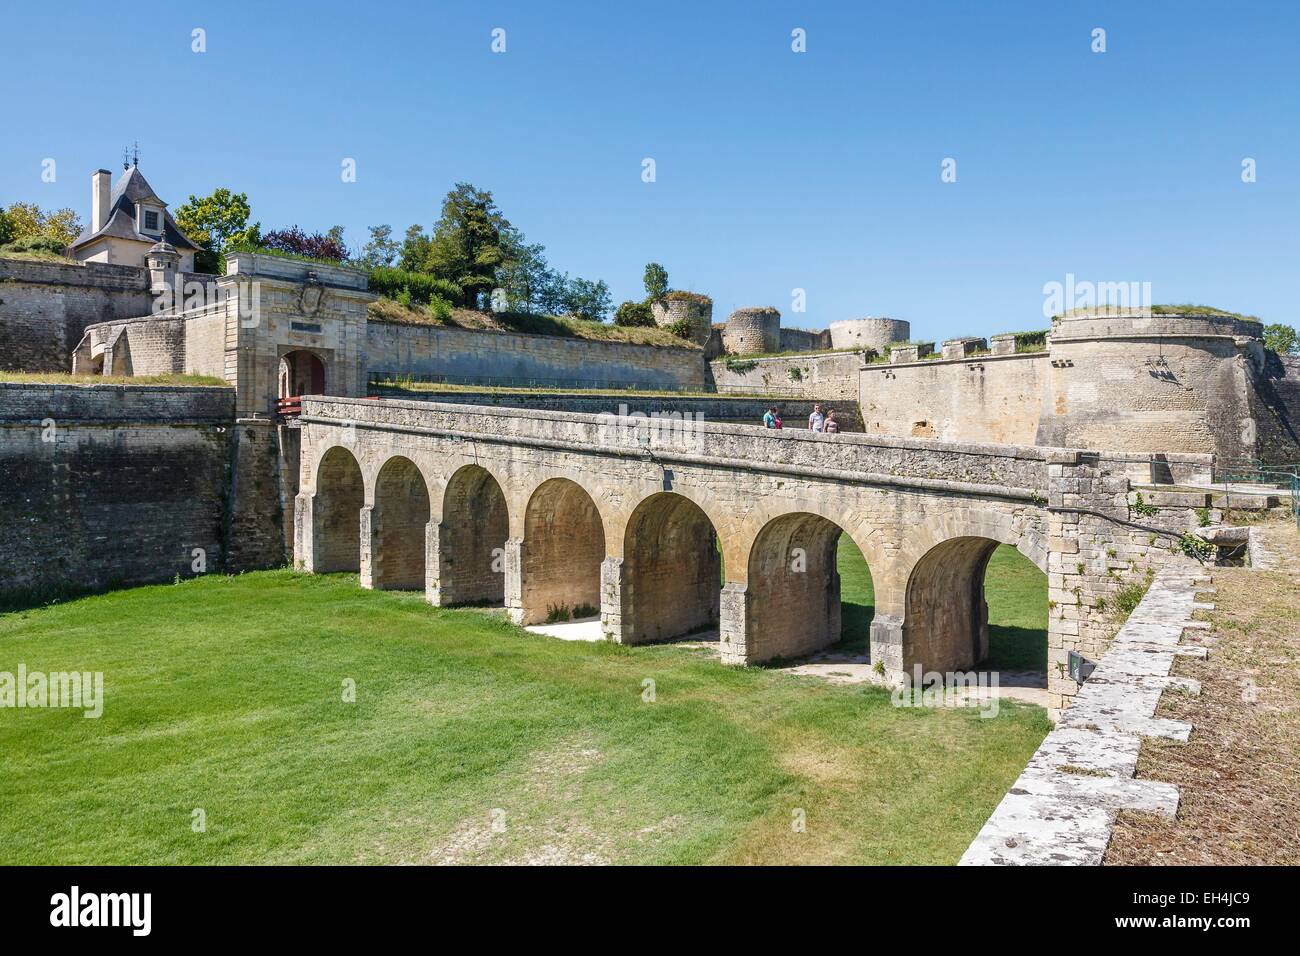 Frankreich, Gironde, Blaye, Zitadelle, La Porte Royale, Befestigungsanlagen von Vauban, als Weltkulturerbe der UNESCO gelistet Stockfoto